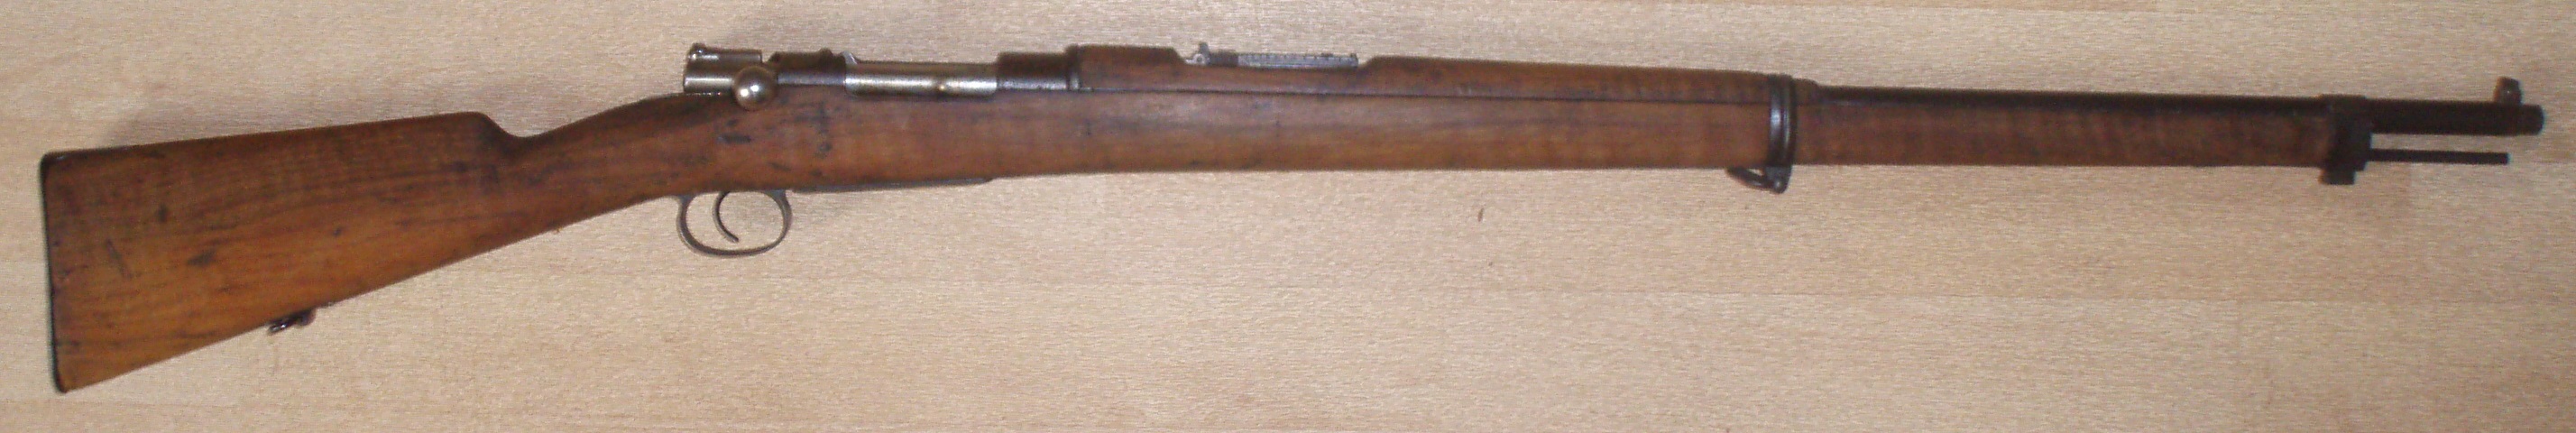 Mauser Mle 1894